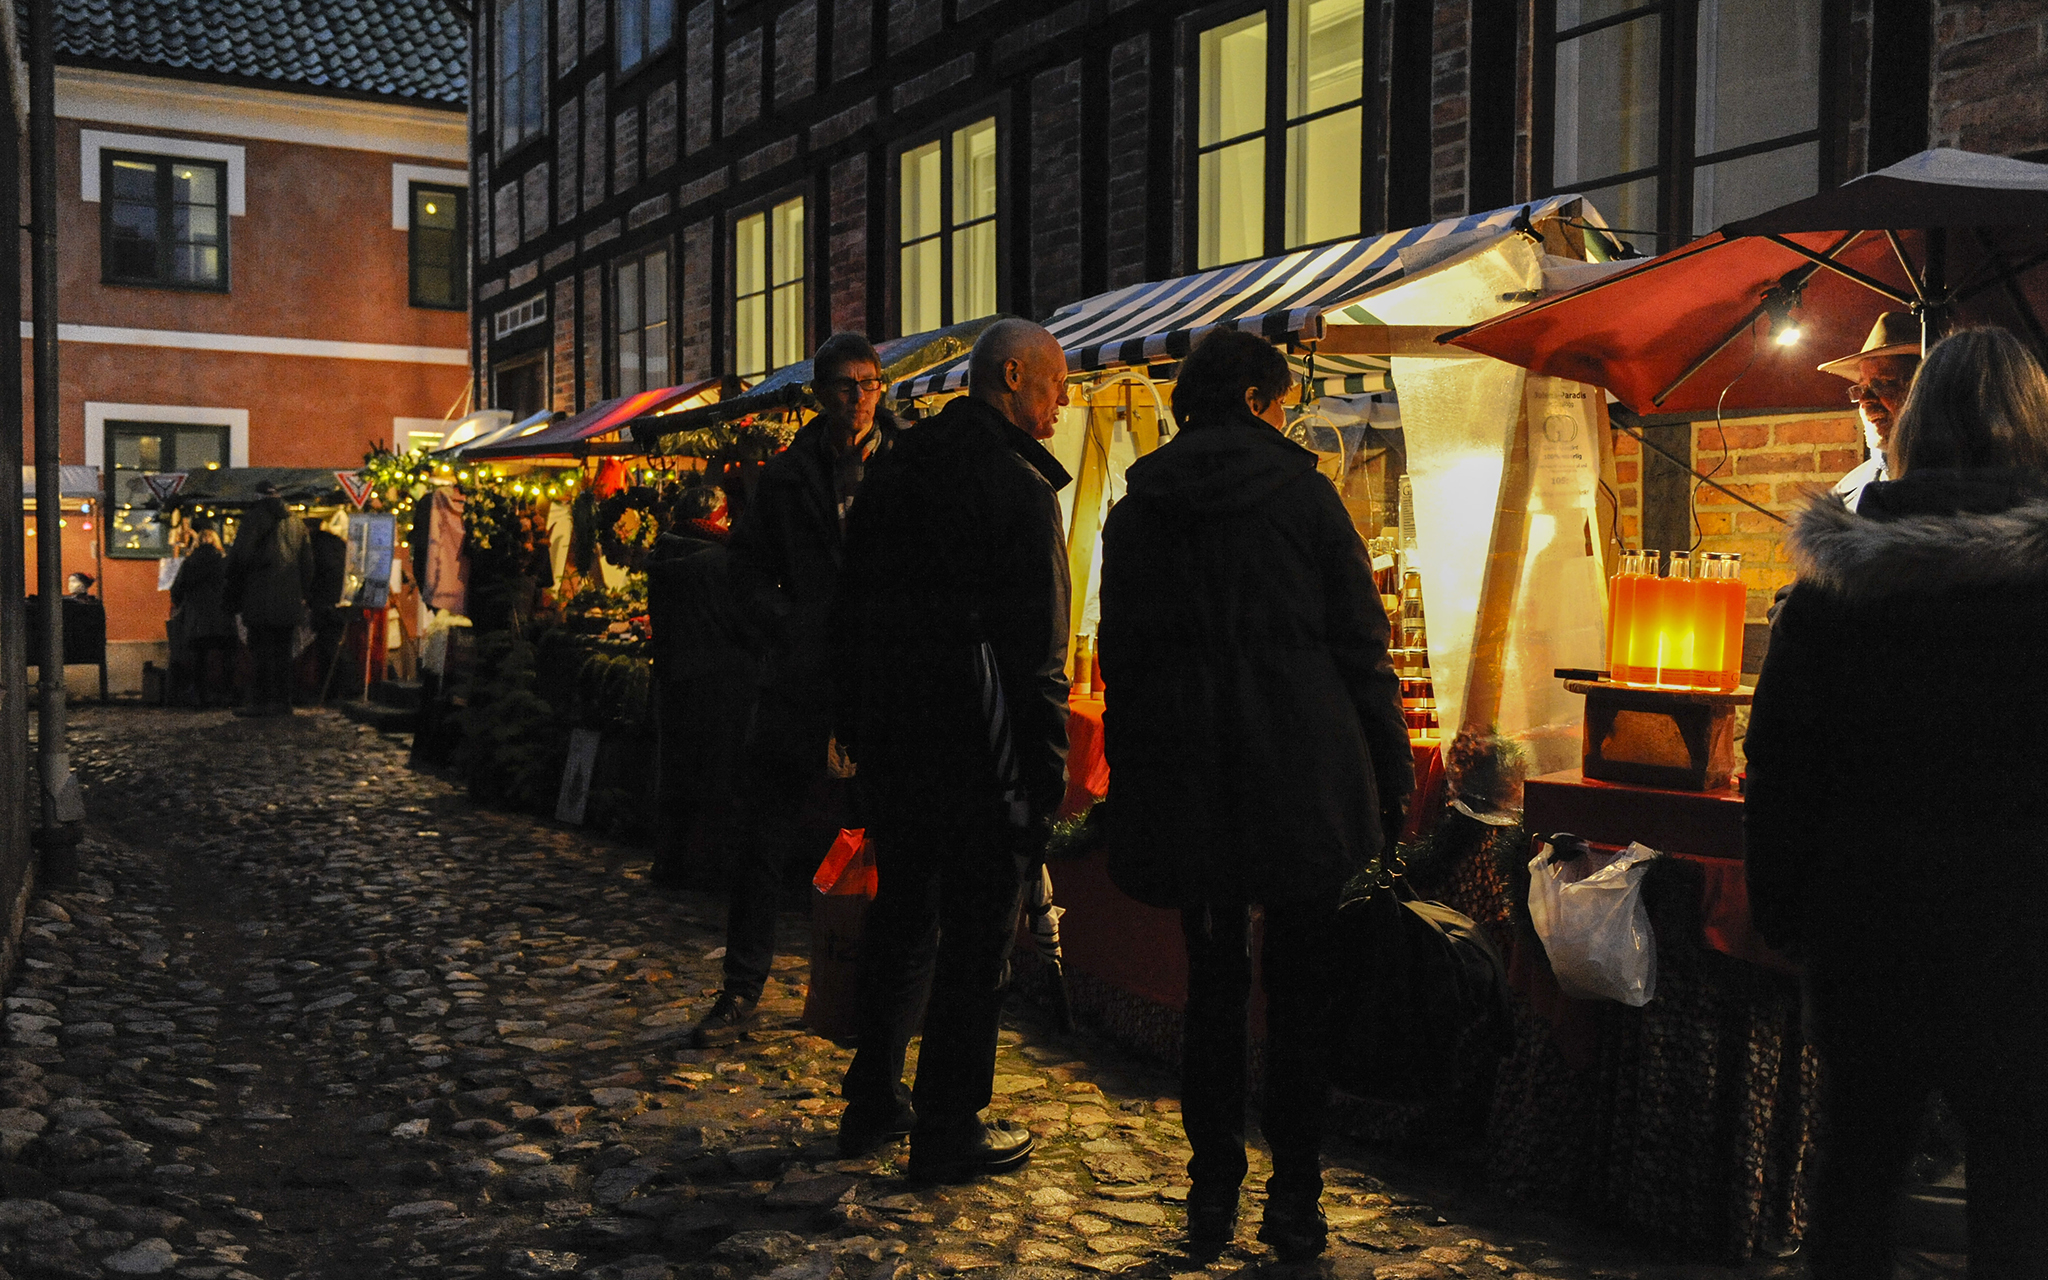 Christmas Market at Kulturen in Lund